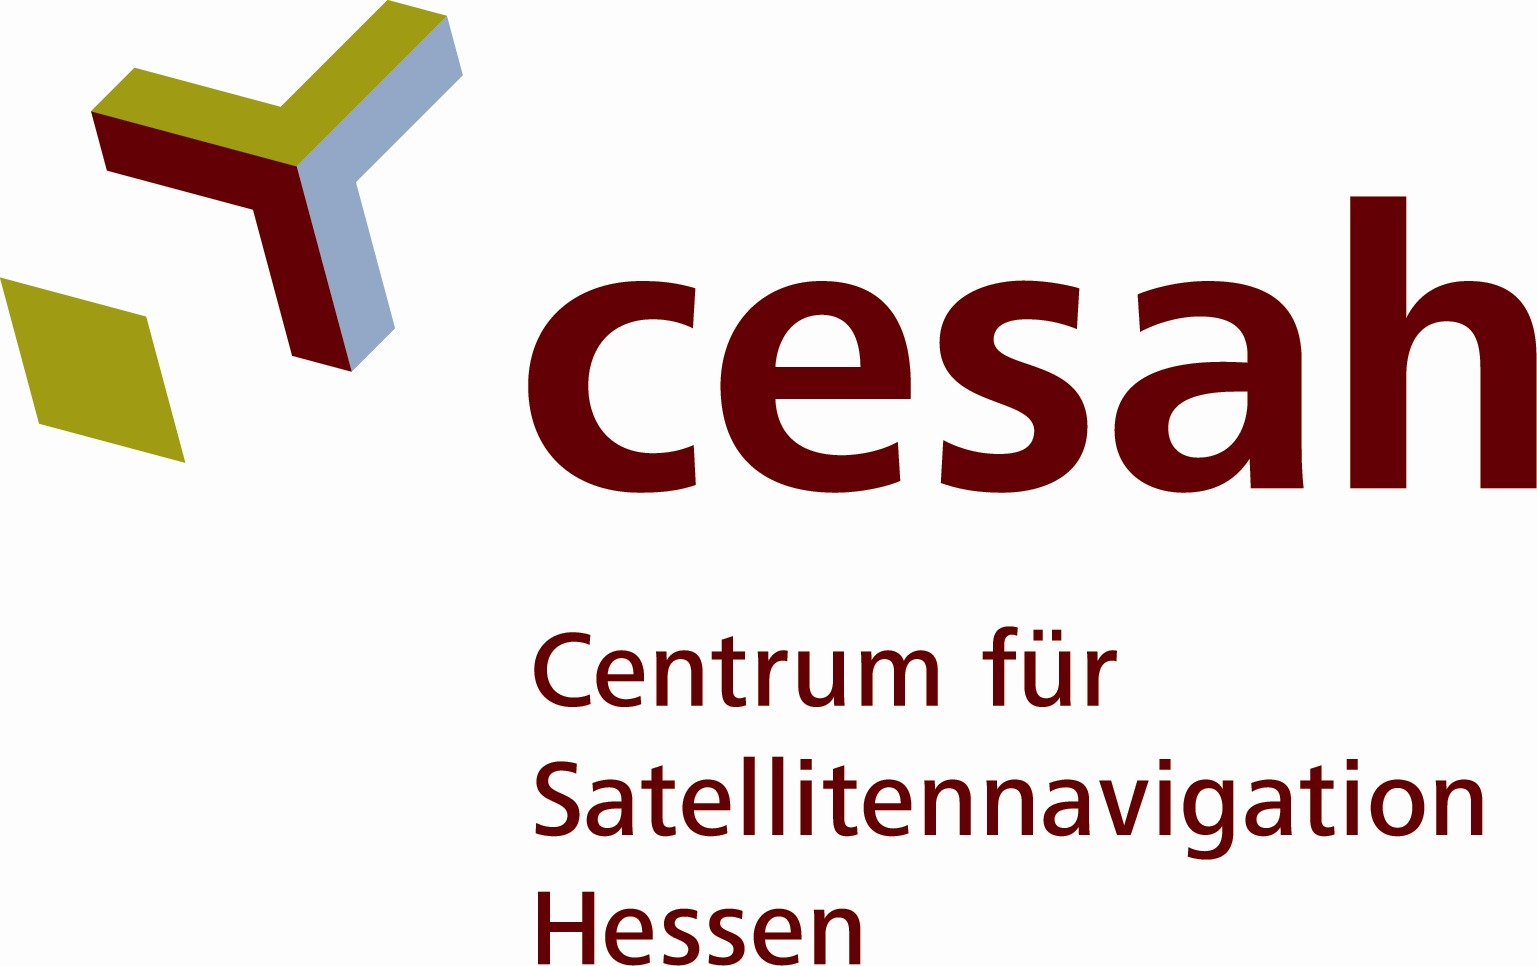 Centrum für Satellitennavigation Hessen (cesah GmbH)